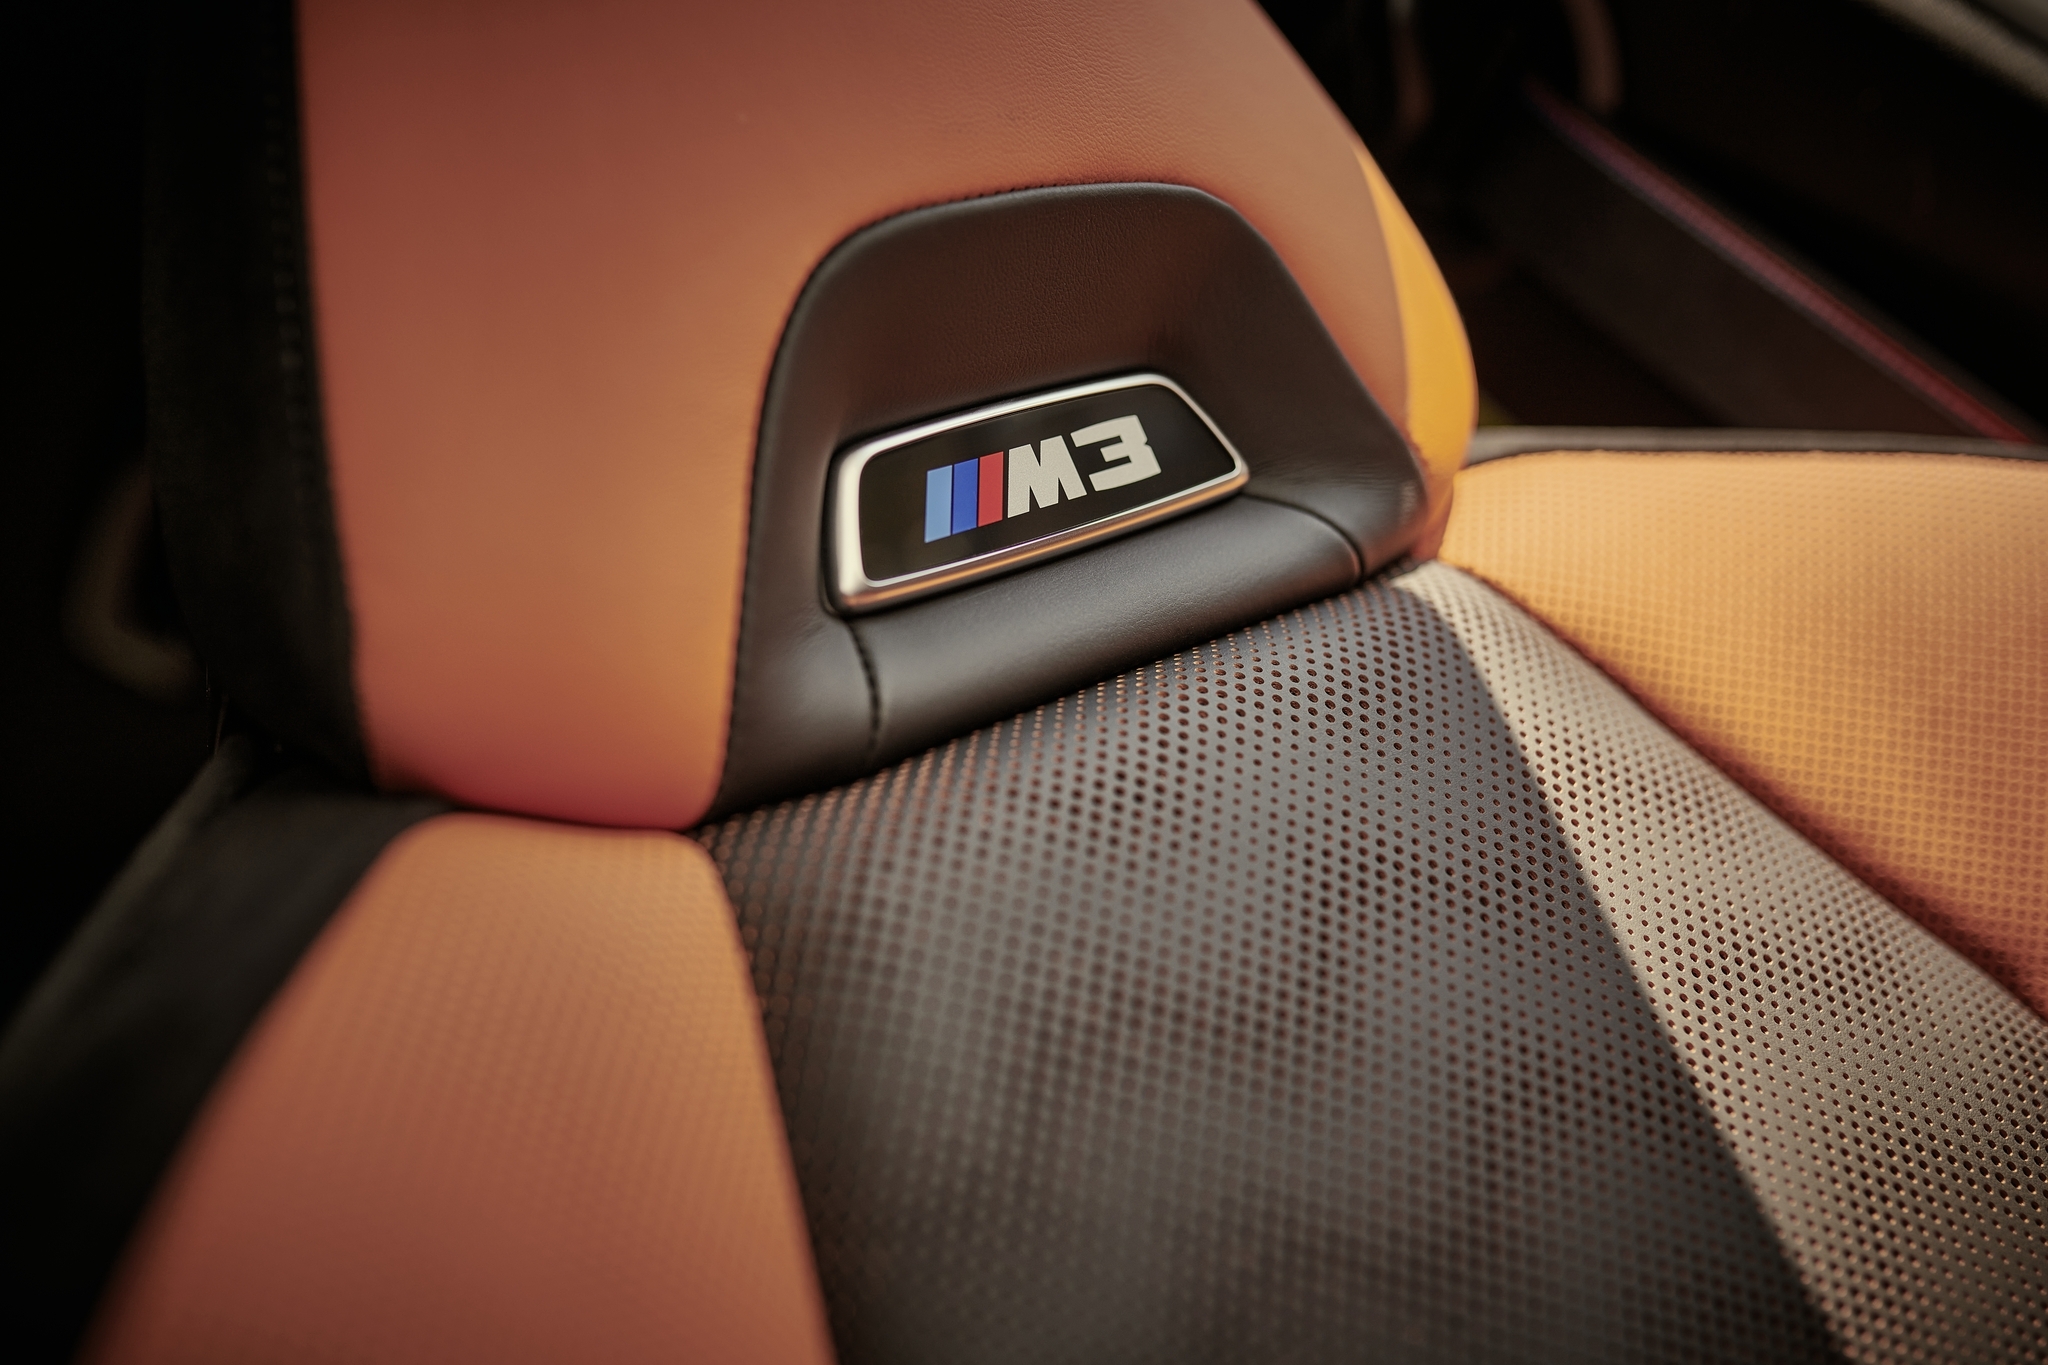 Универсал BMW M3 Touring получил заводской тюнинг